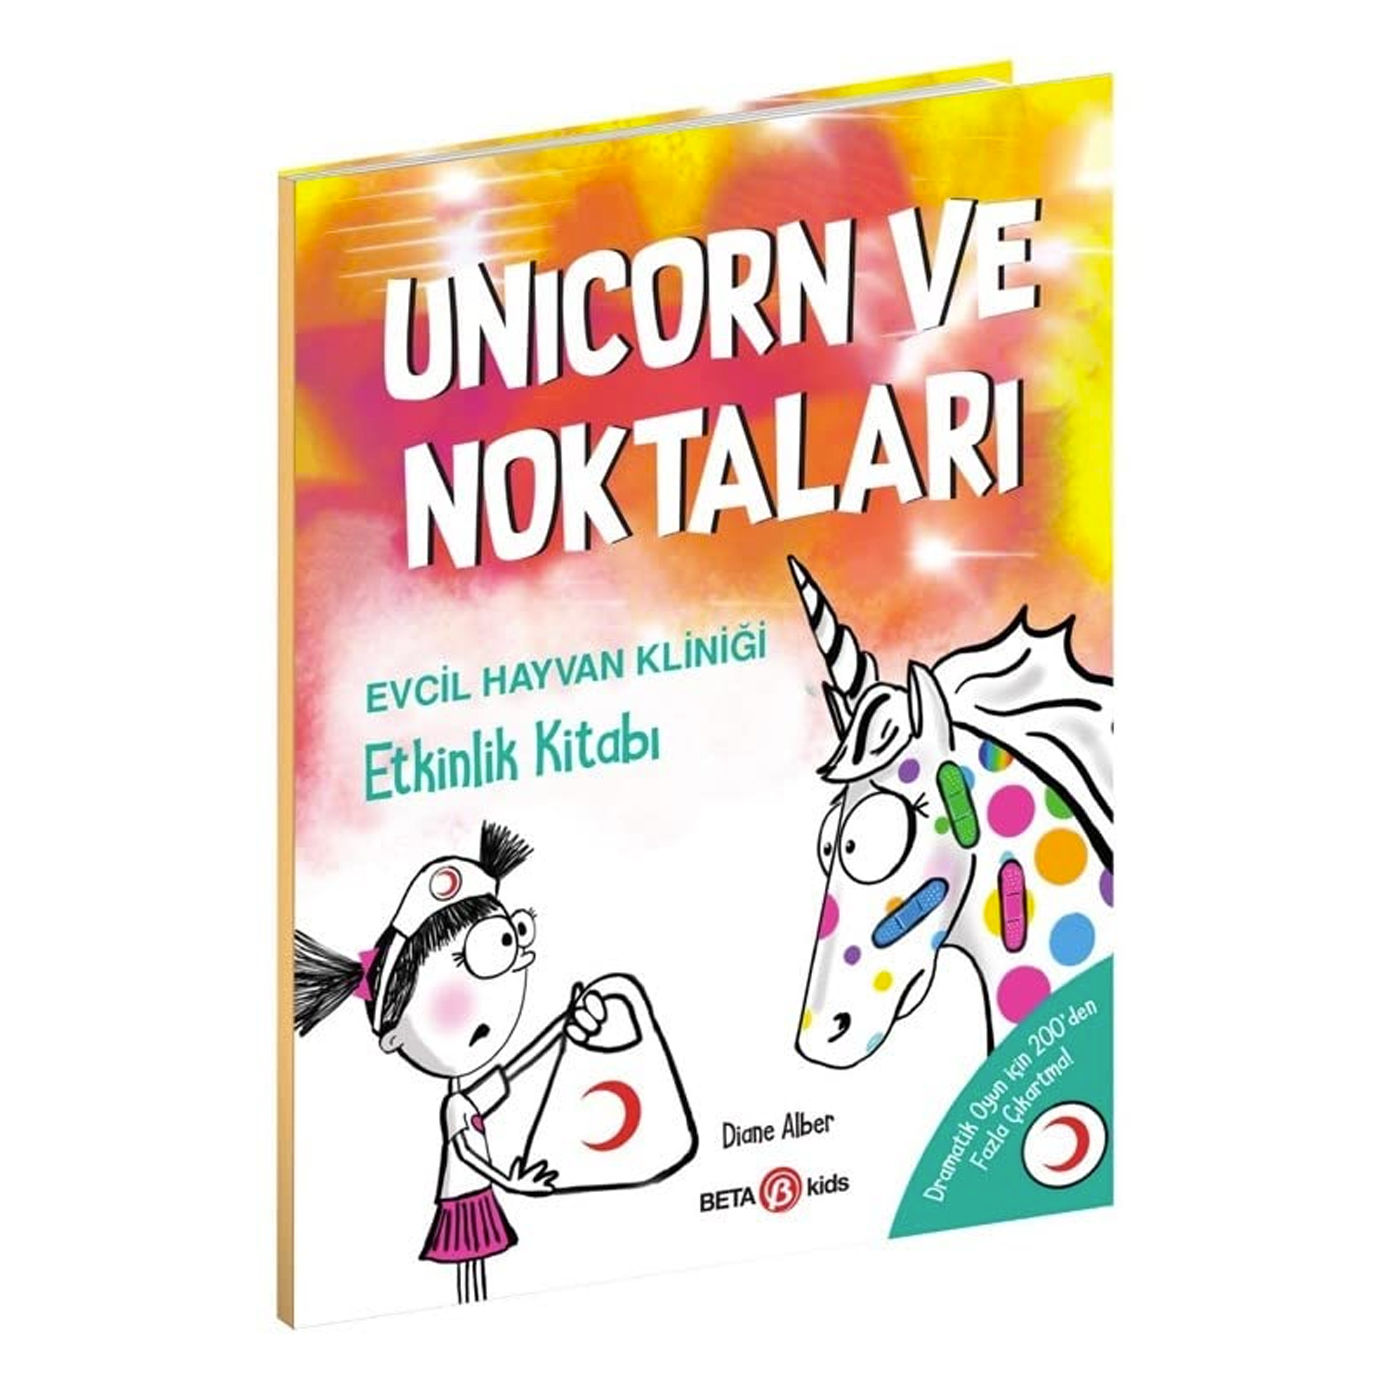  Unicorn Ve Noktaları Evcil Hayvan Kliniği - Etkinlik Kitabı